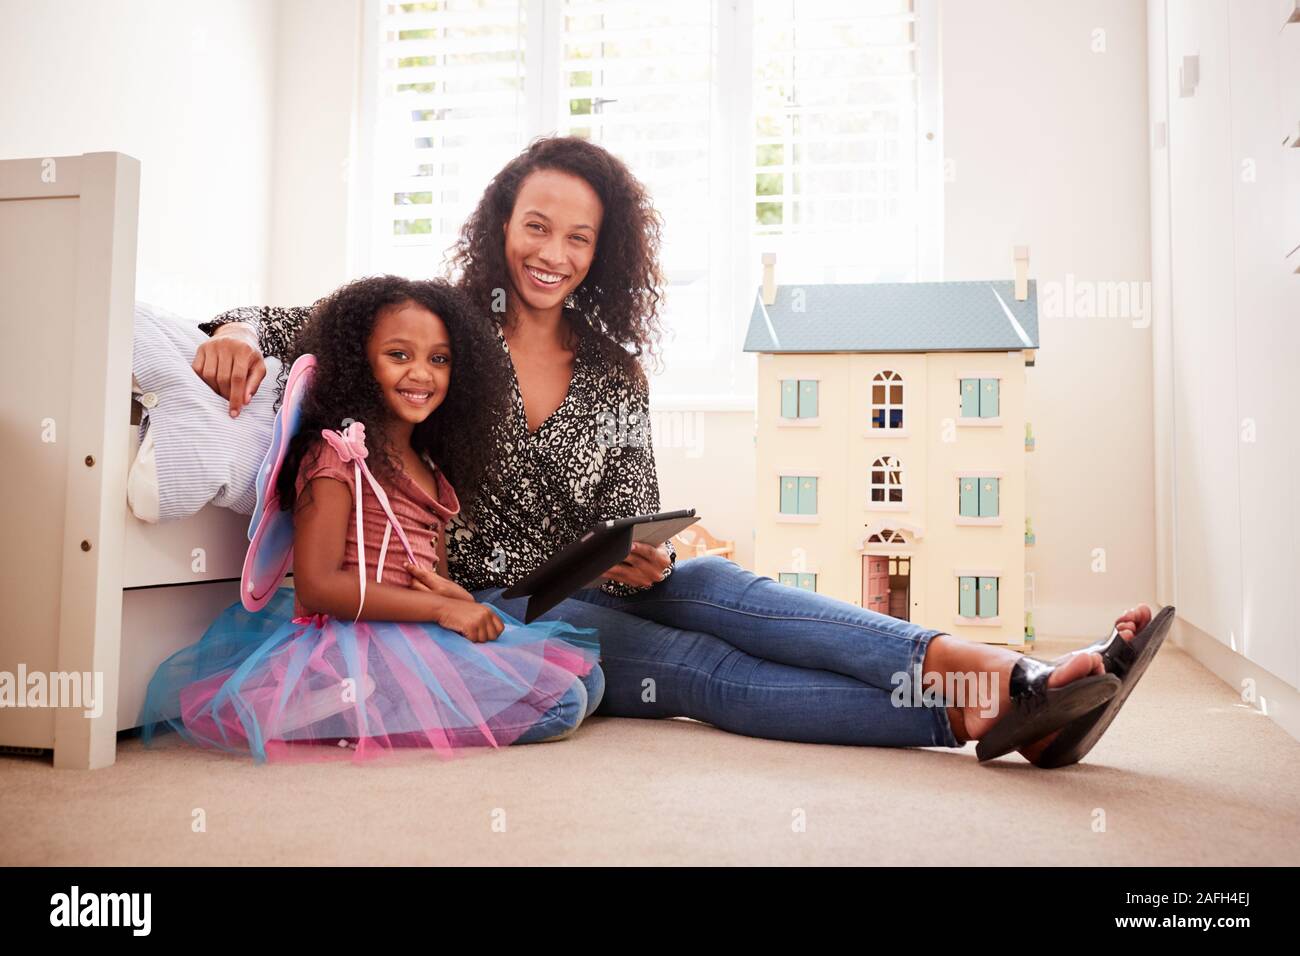 Ritratto Di madre in figlia seduta sul letto in camera da letto per i bambini con tavoletta digitale insieme Foto Stock